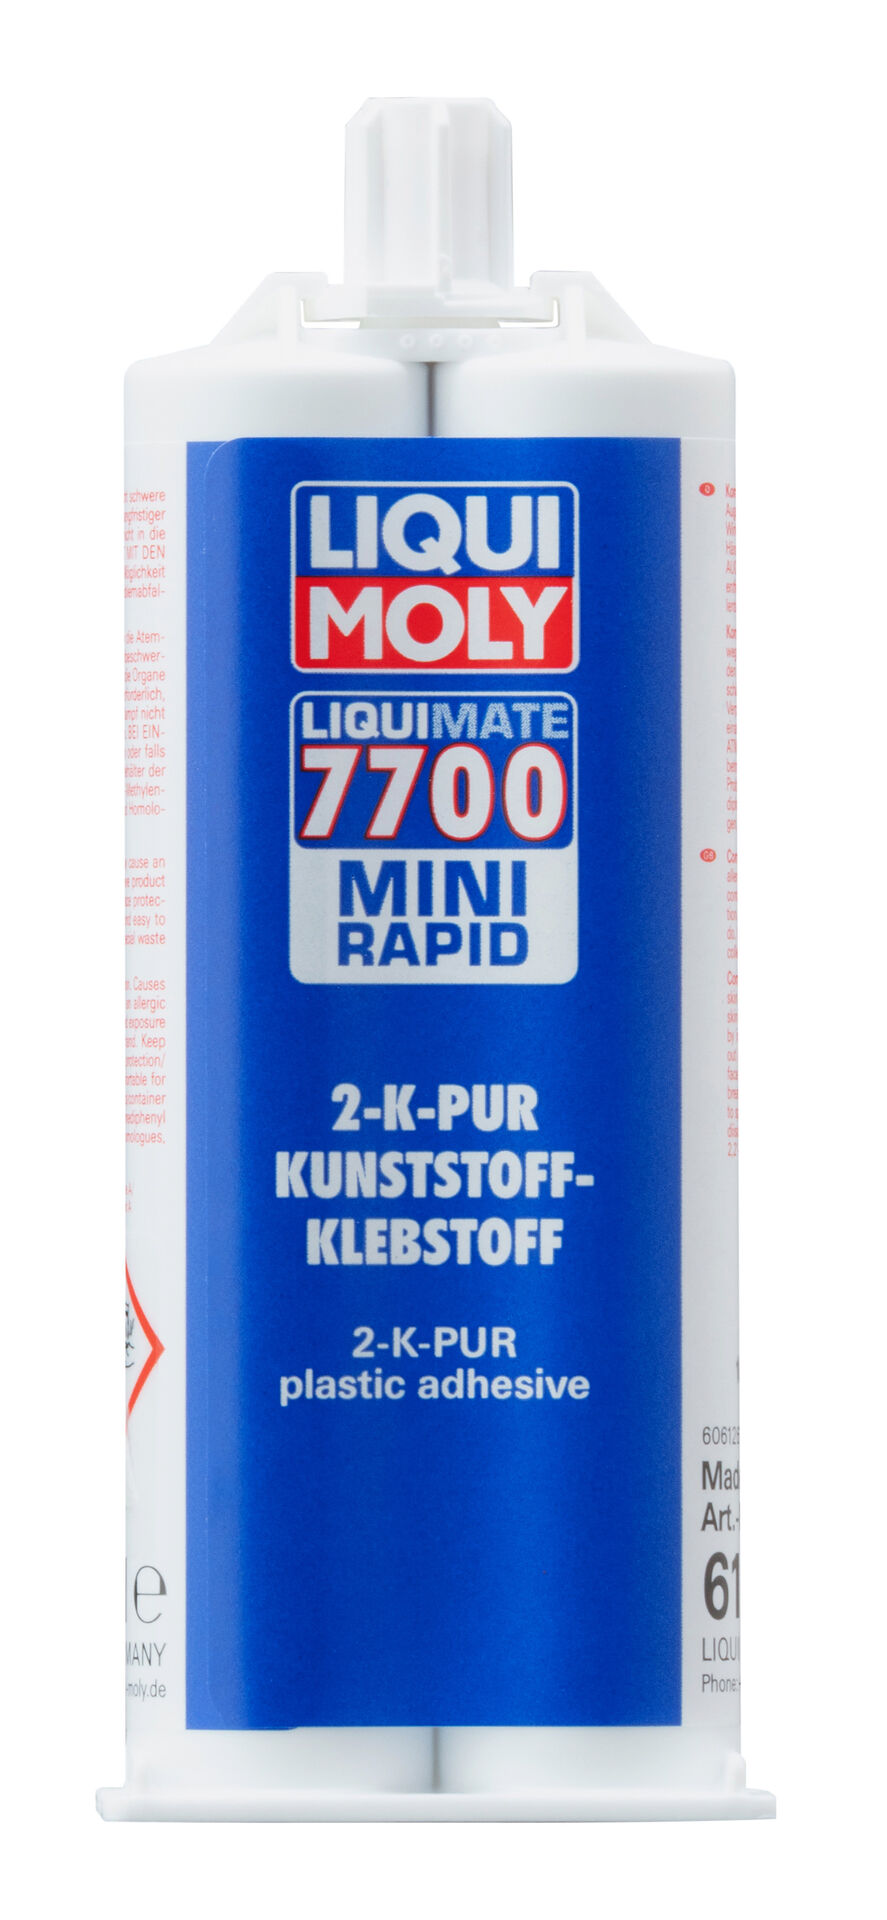 Liqui Moly 2K Pur Kunststoff-Klebstoff Liquimate 7700 Mini Rapid 50 ml